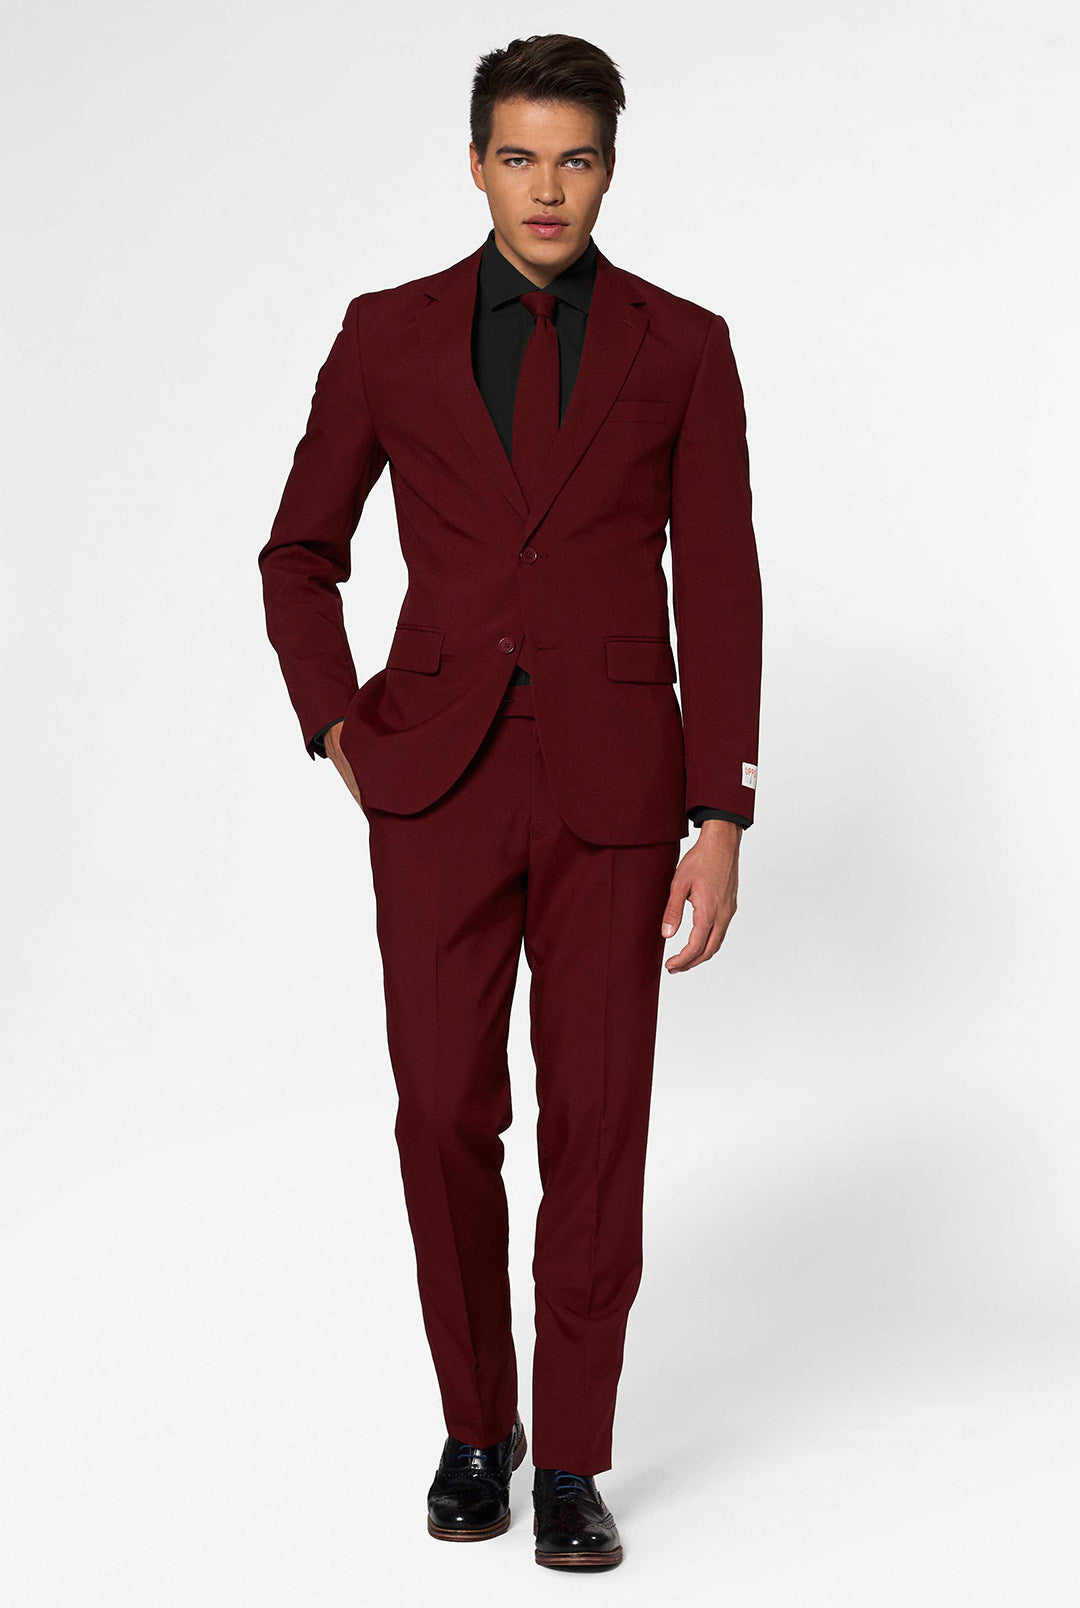 Fleetwood Moleskin Burgundy Suit